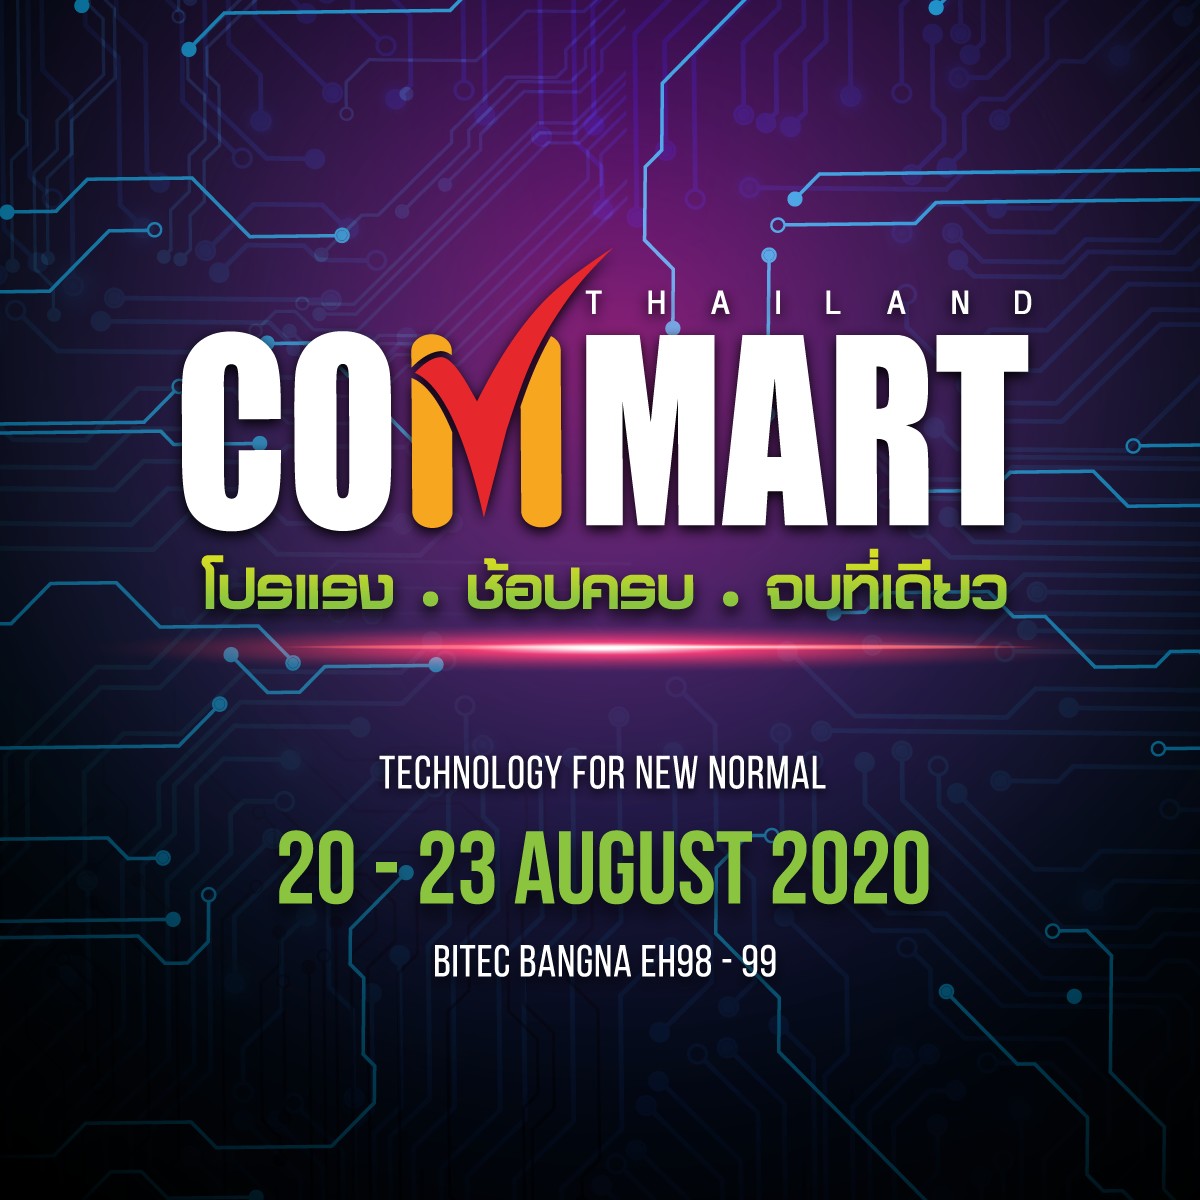 COMMART รับ New Normal ช้อปสนุก อุ่นใจ ปลอดโควิด-19 พบกัน 20-23 สิงหาคม 2563 ณ ไบเทค บางนา